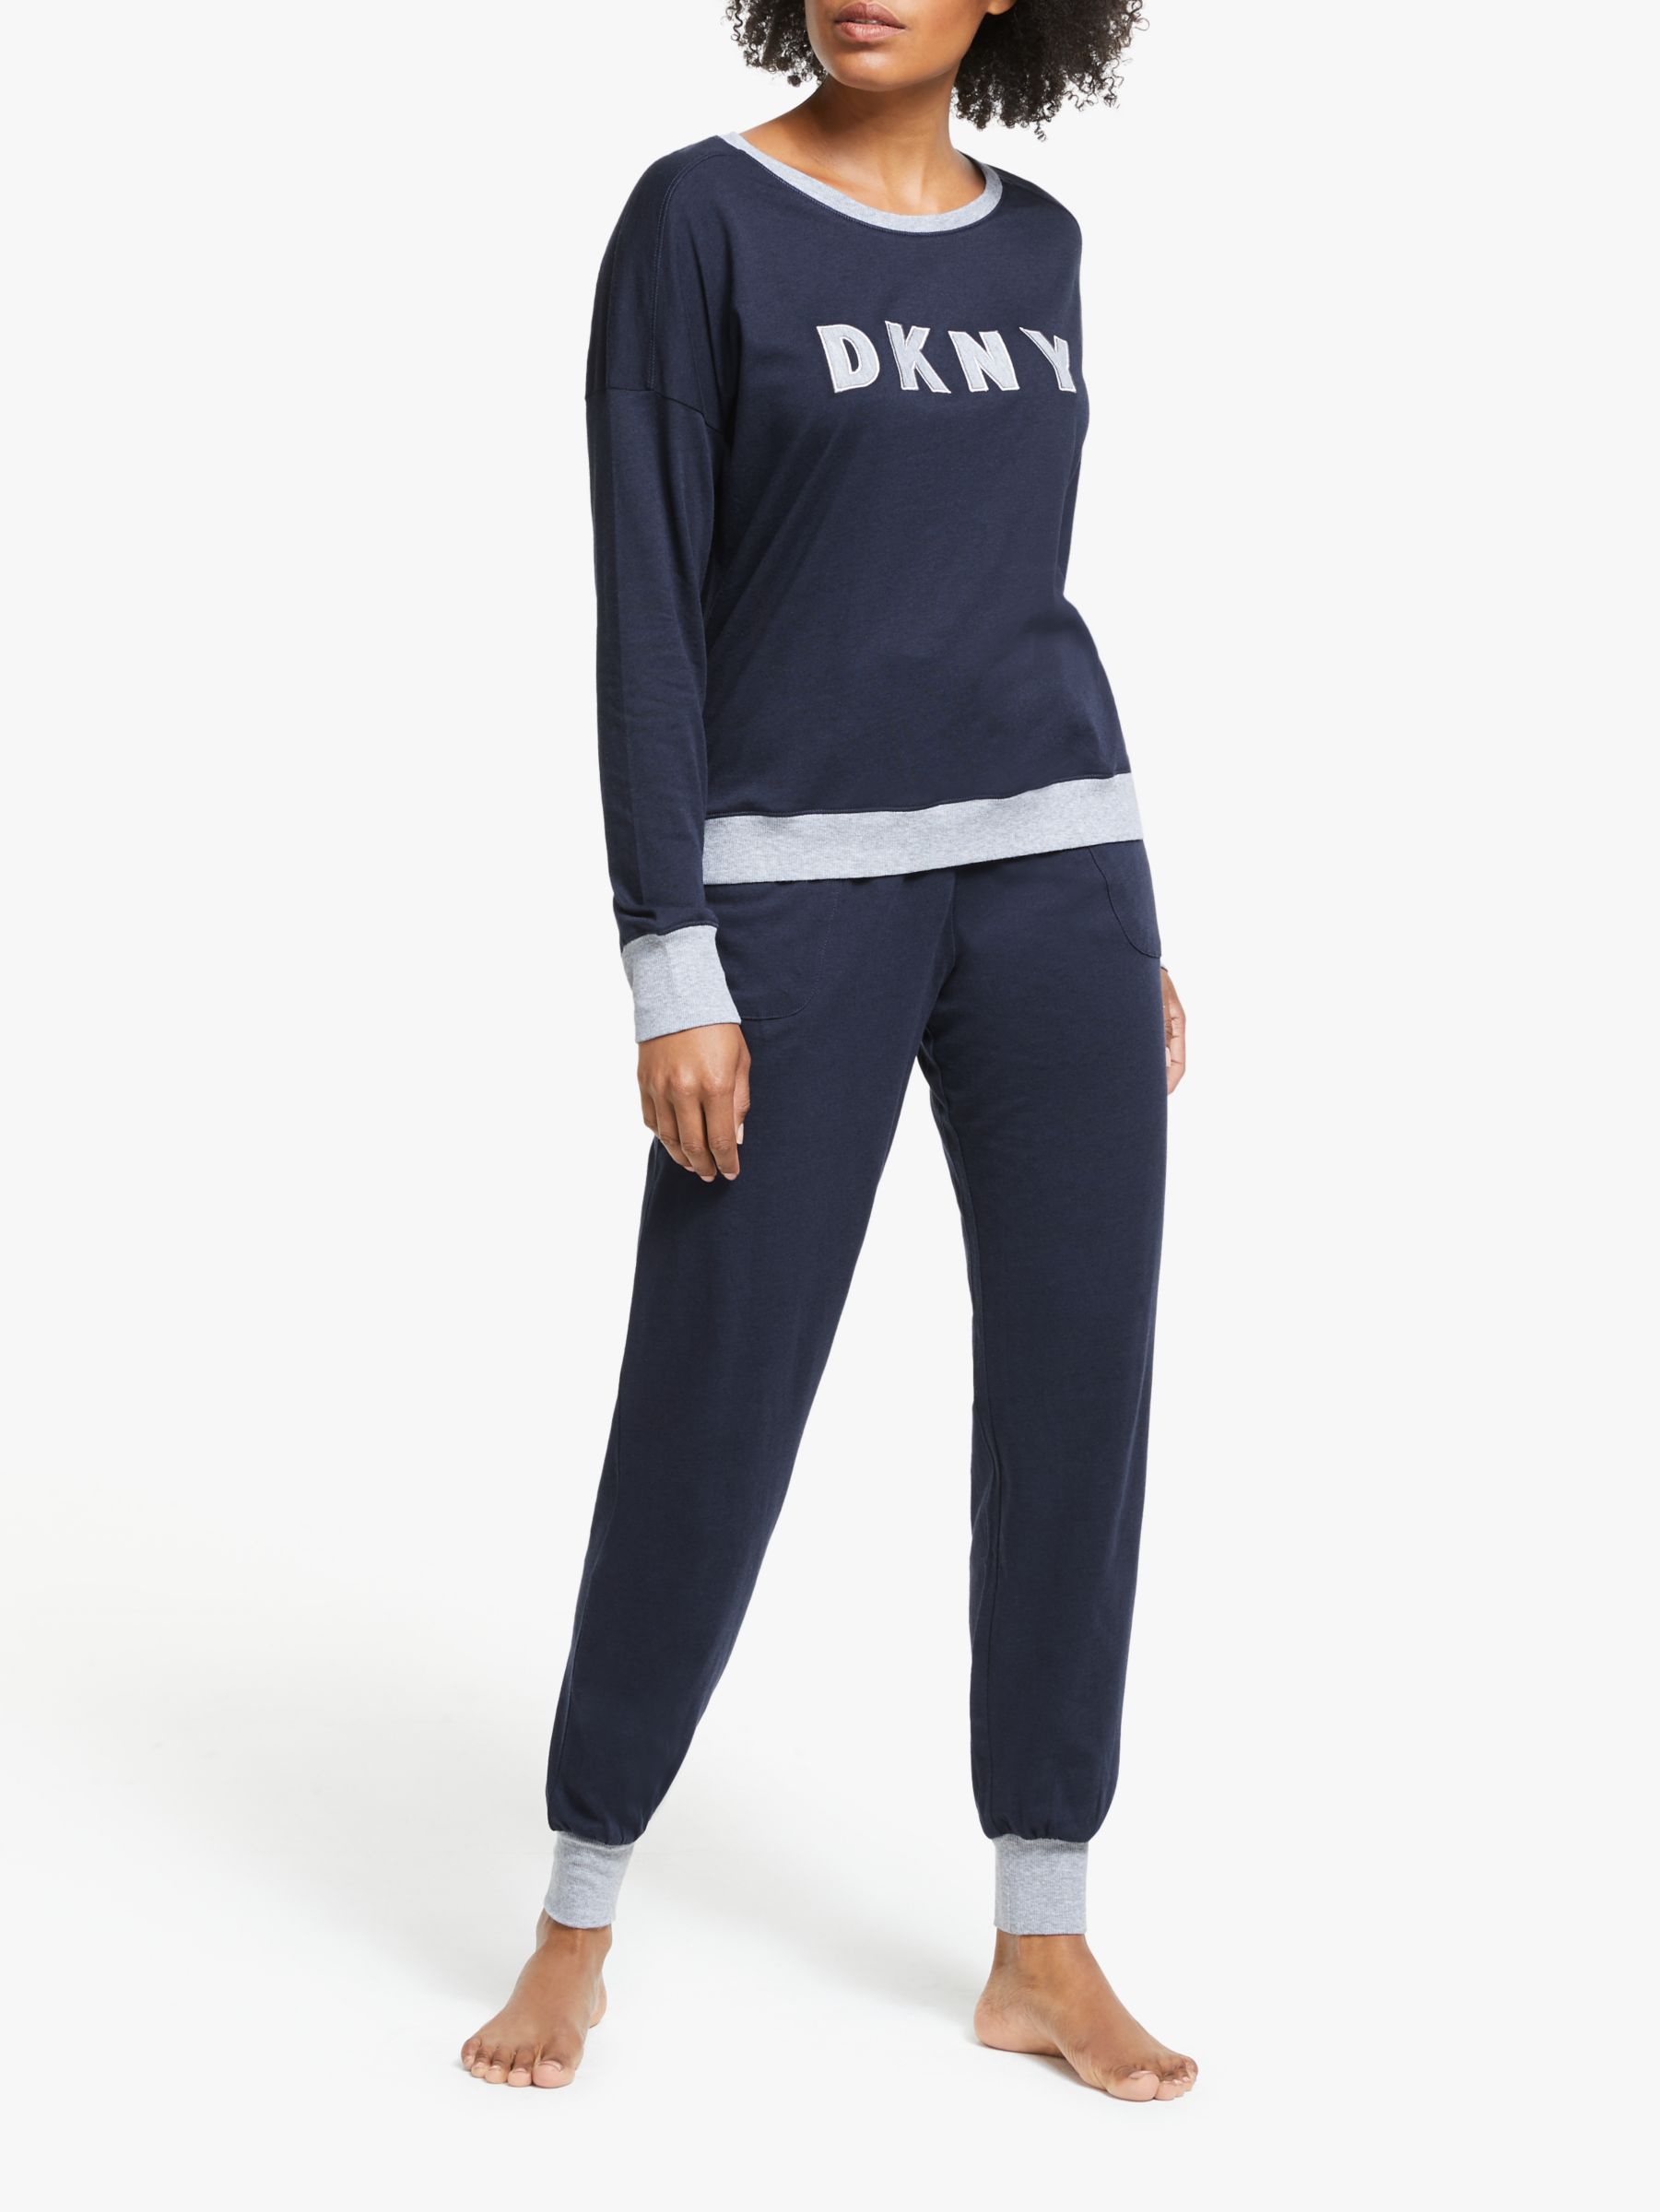 DKNY Signature Jogger Pyjama Set, Navy/Grey, S